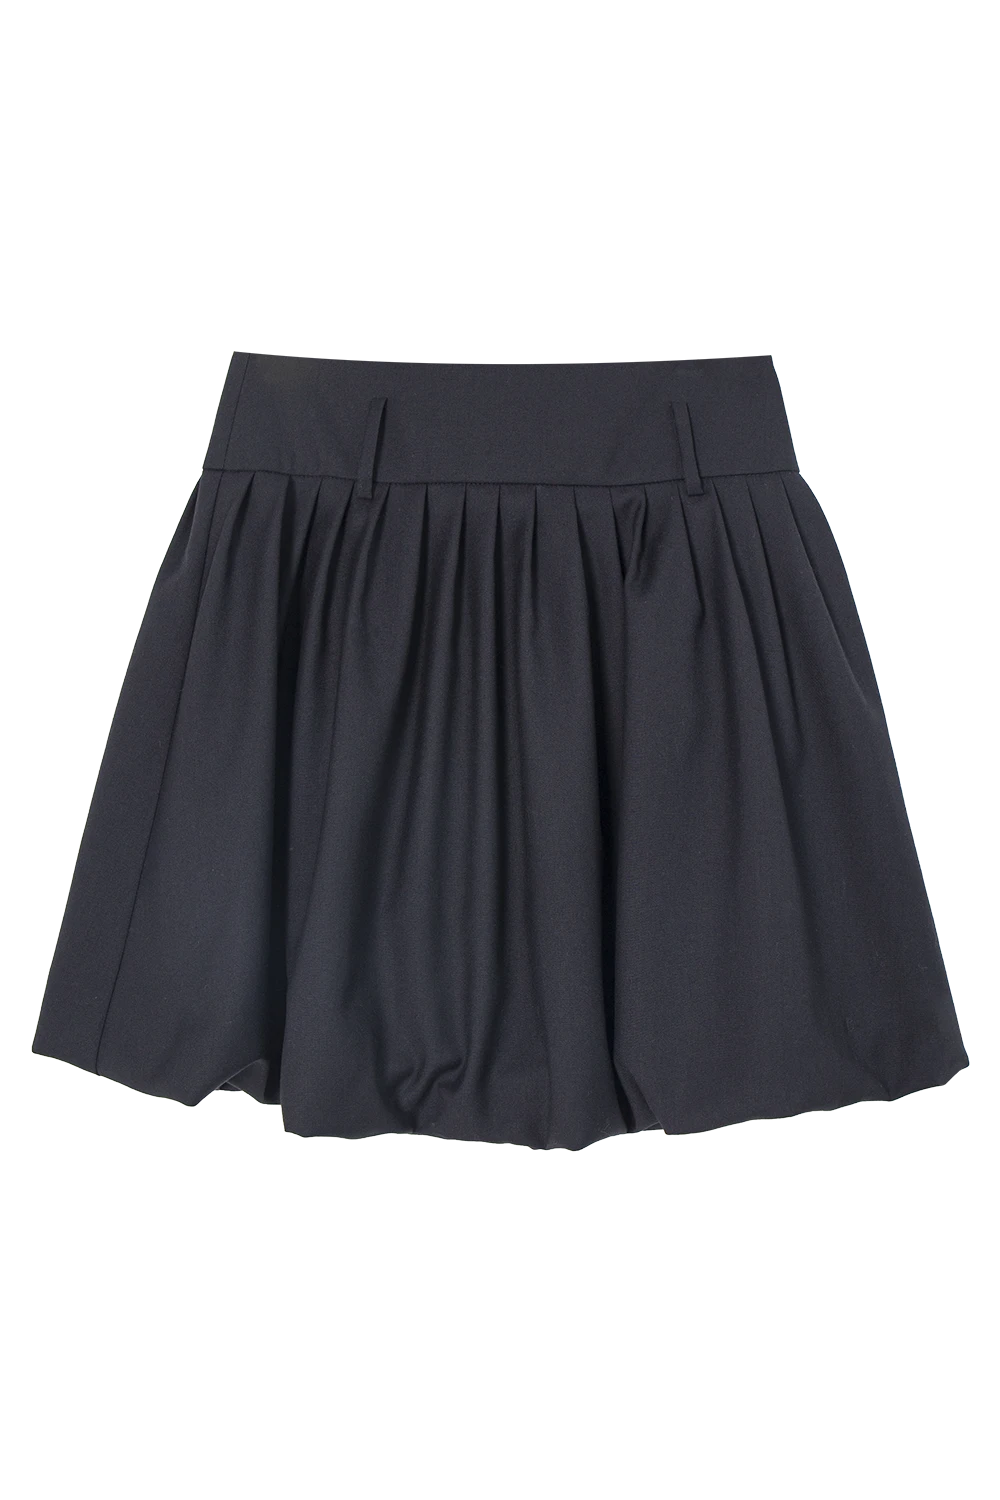 Skirt Mini Berlipat Klasik dengan Potongan A-line yang Elegan